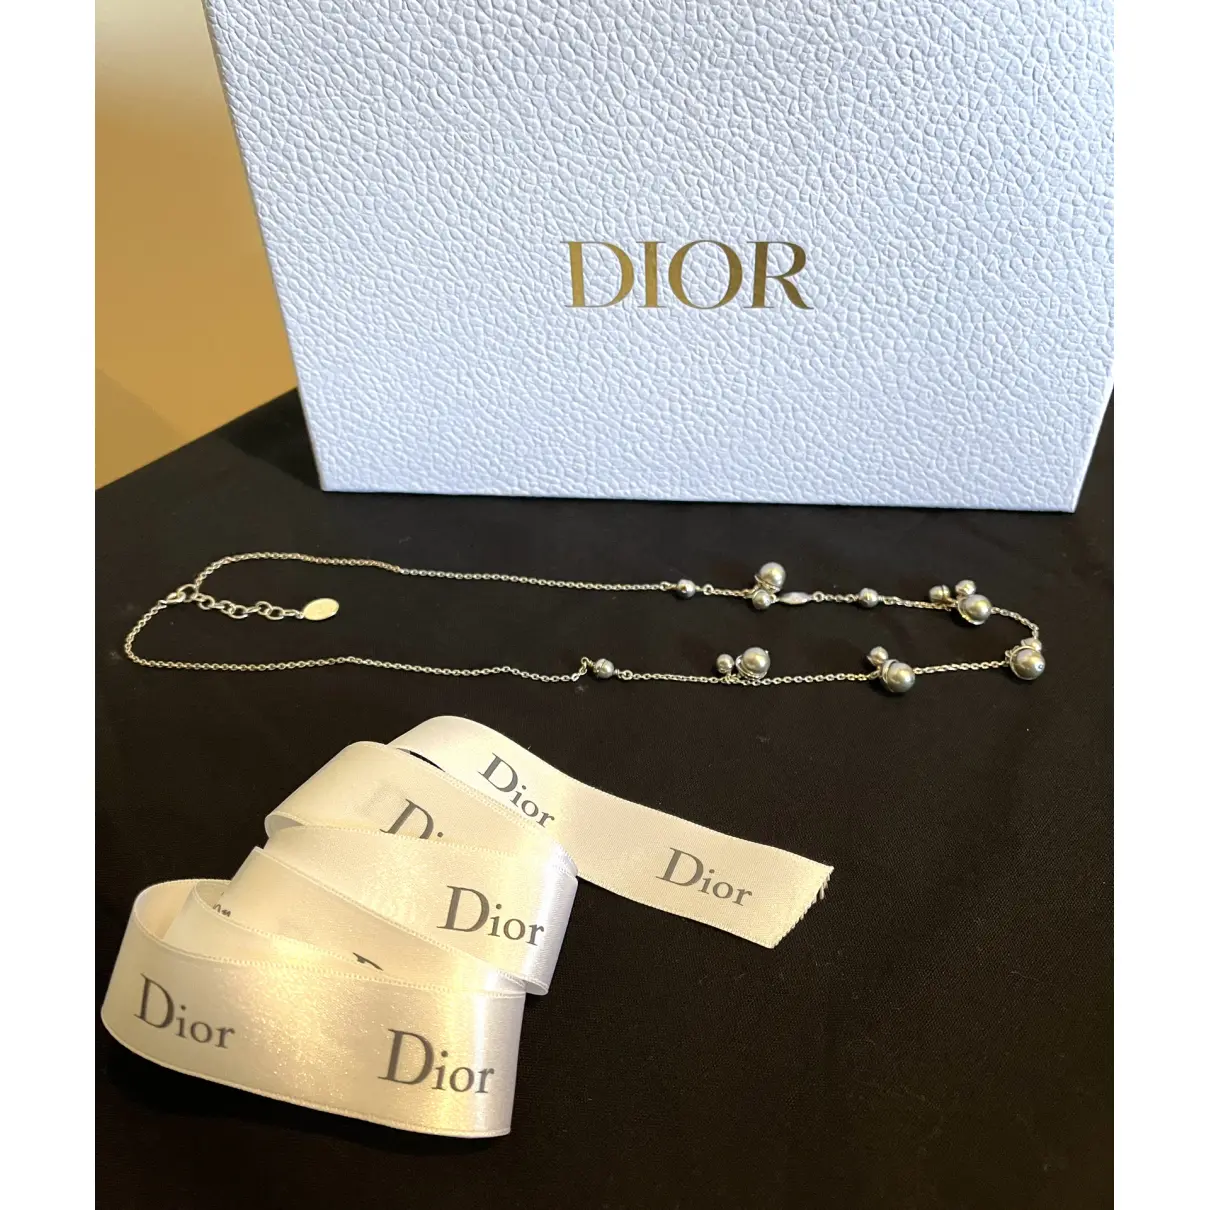 Buy Dior UltraDior pearl necklace online